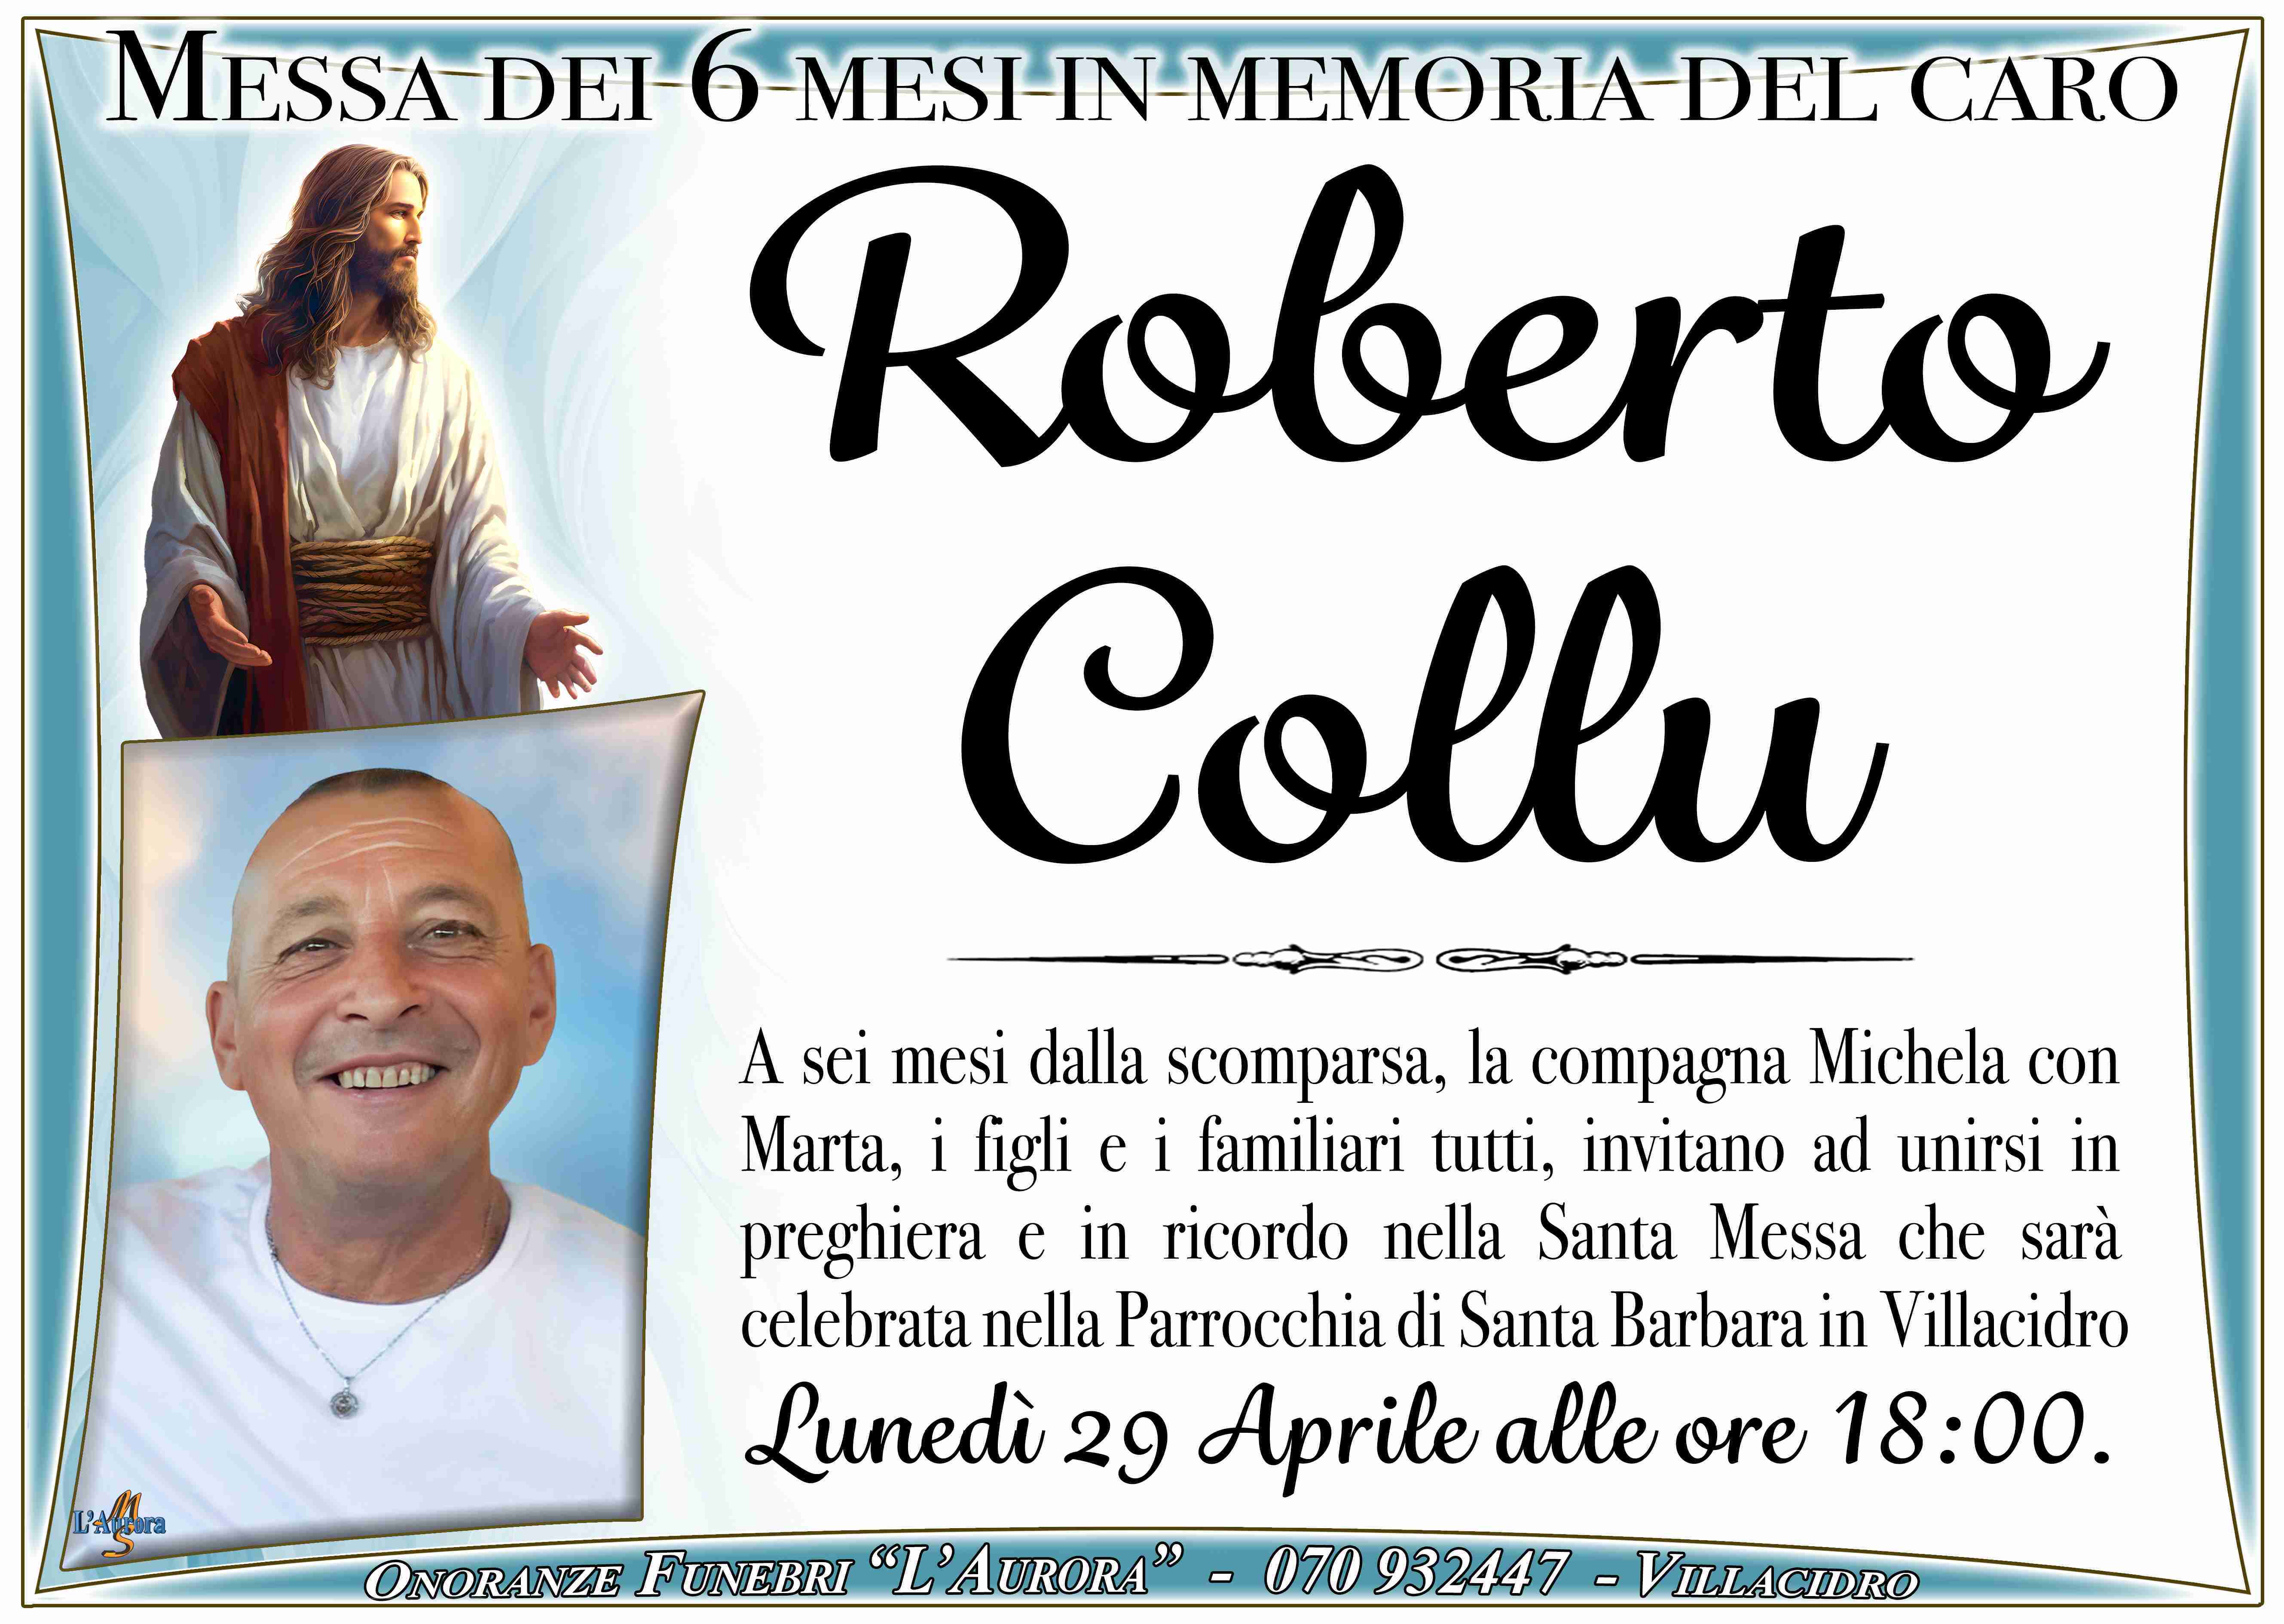 Roberto Collu